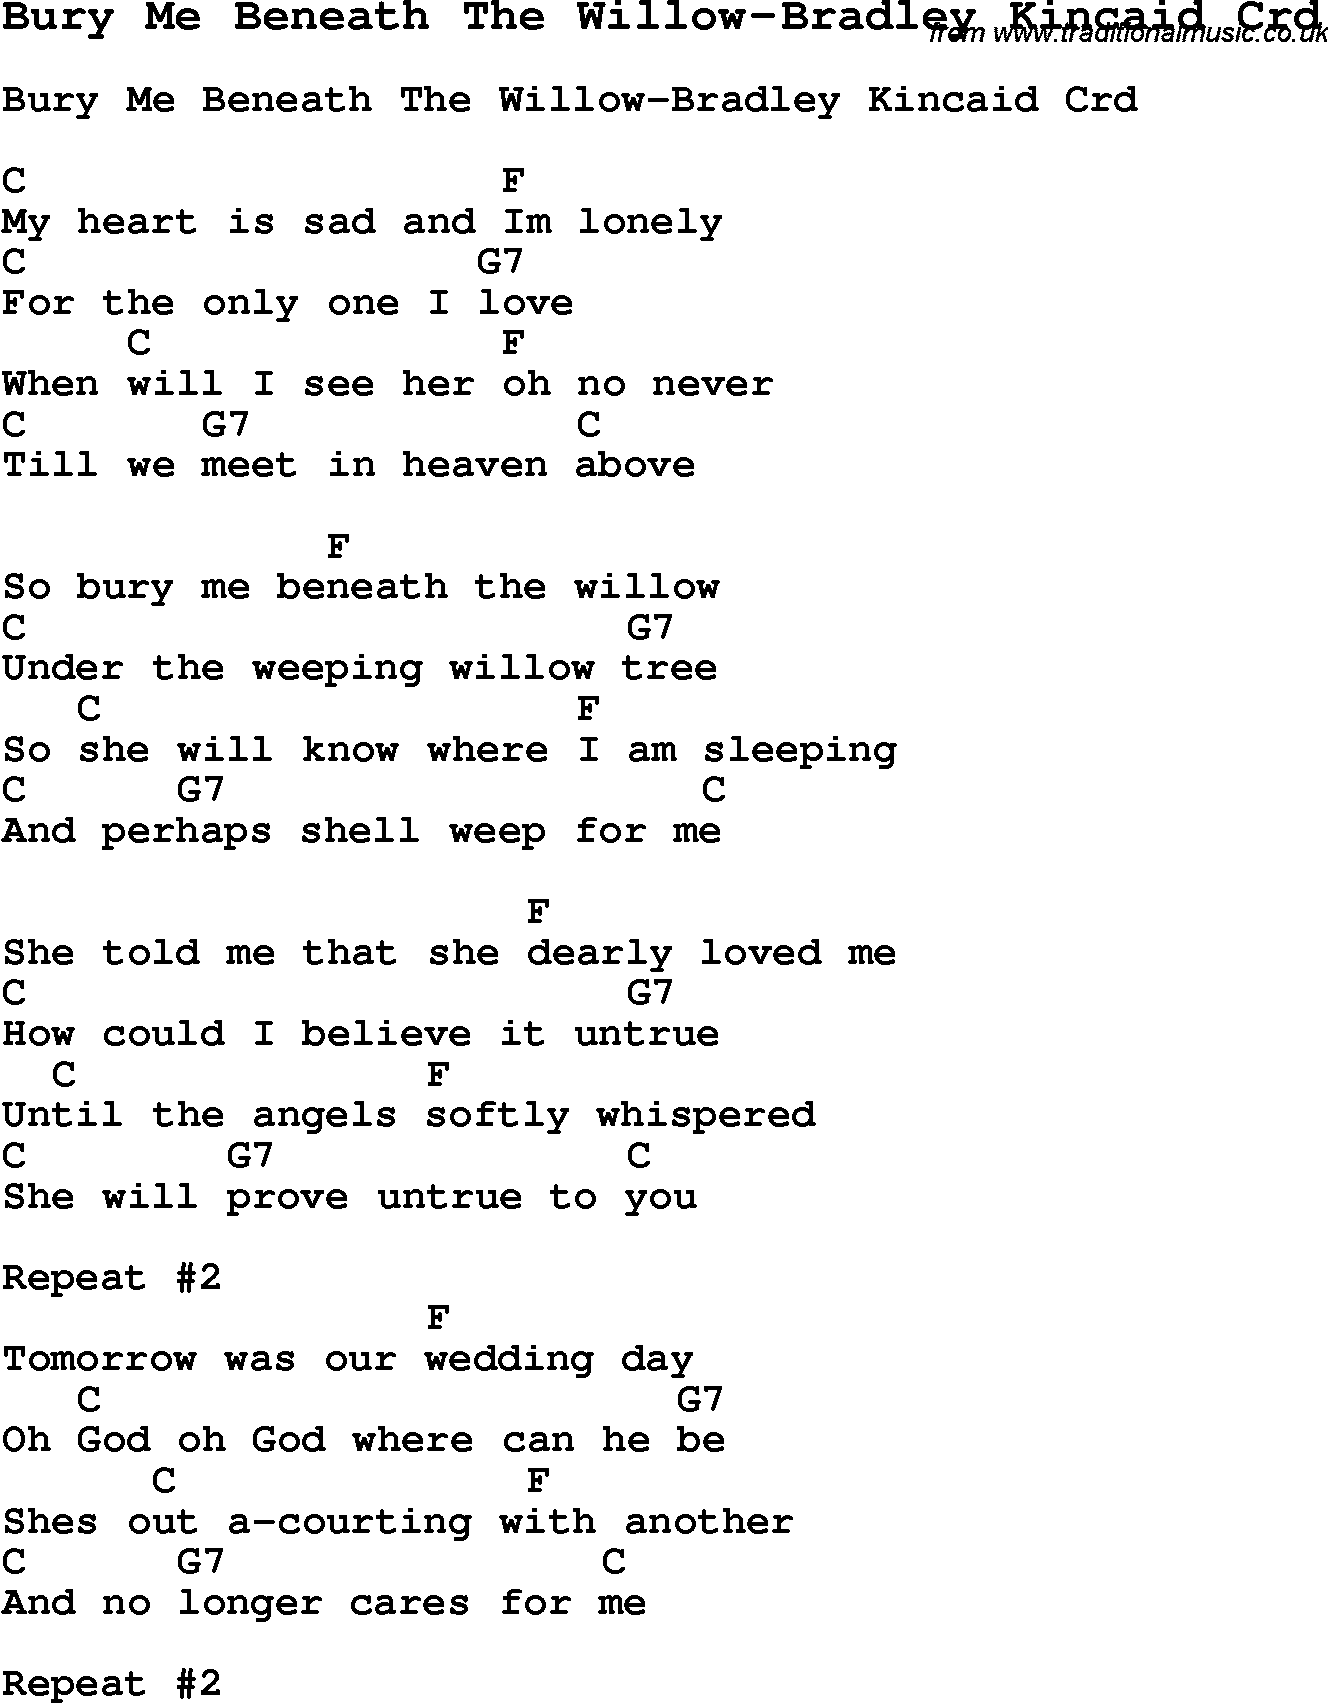 Skiffle Song Lyrics for Bury Me Beneath The Willow-Bradley Kincaid with chords for Mandolin, Ukulele, Guitar, Banjo etc.